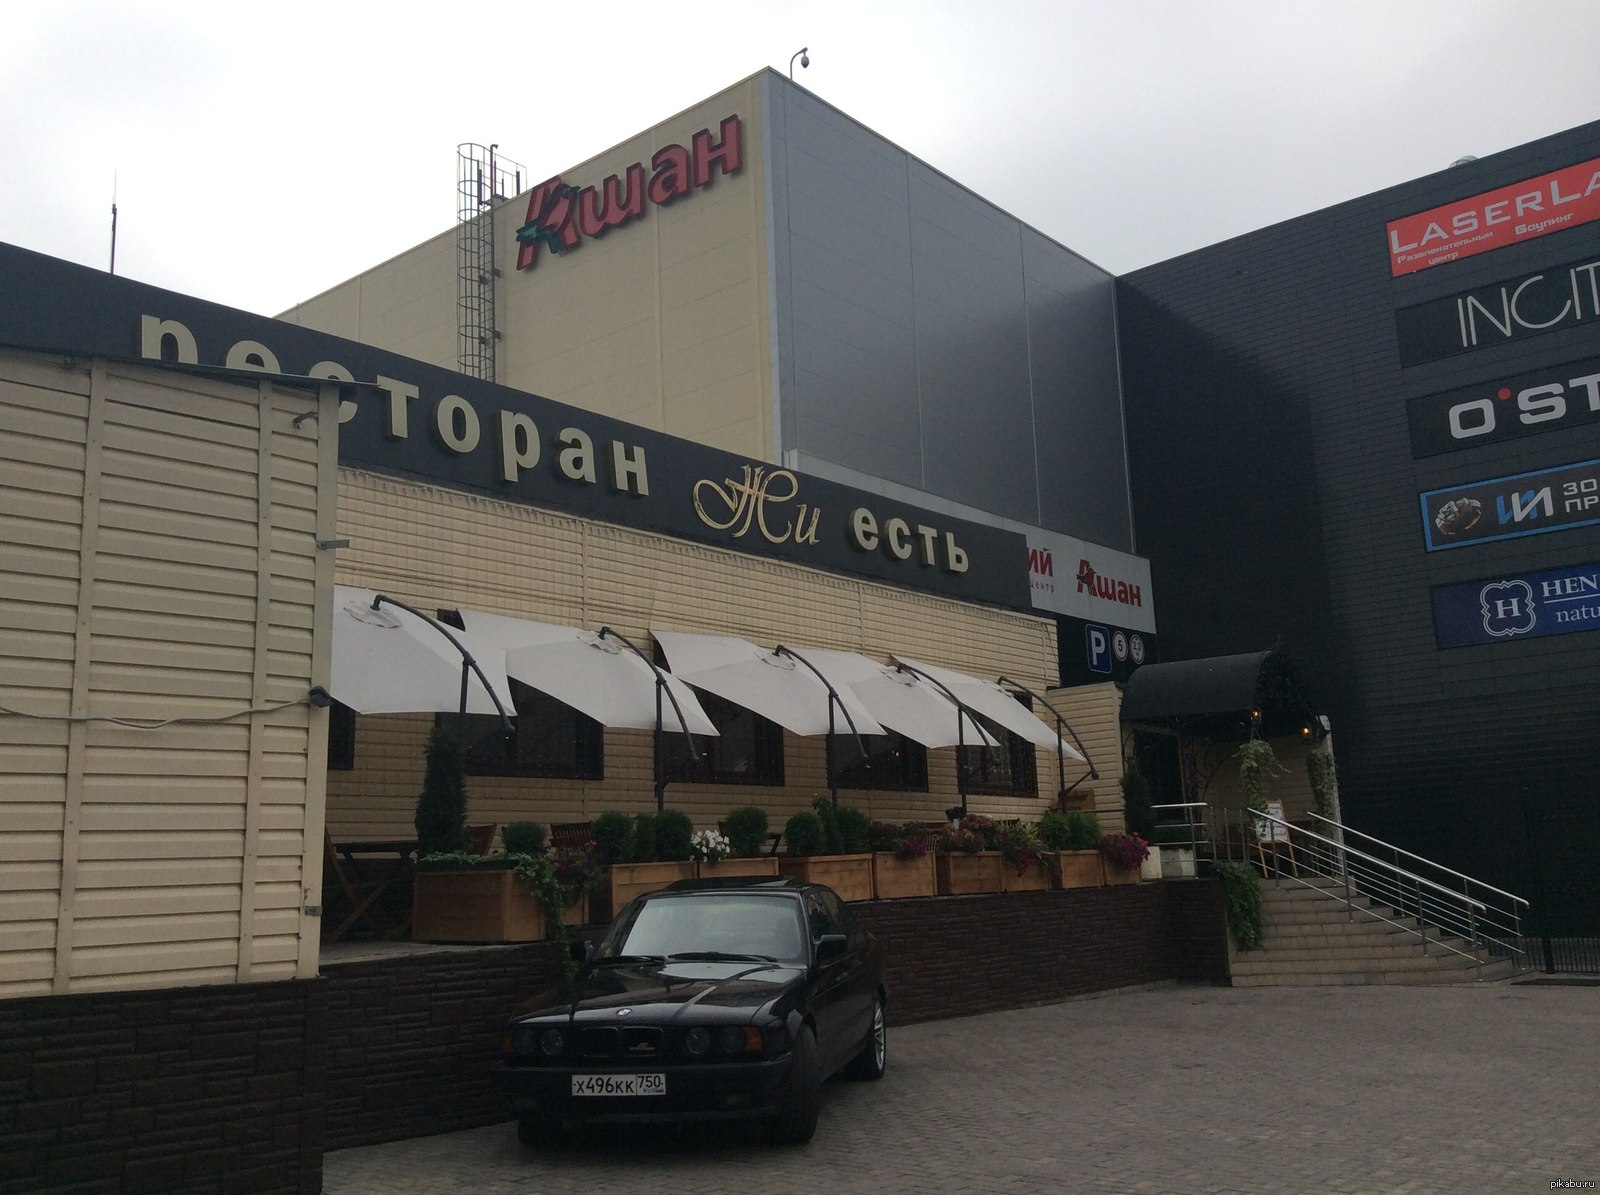 ресторан жи есть в москве